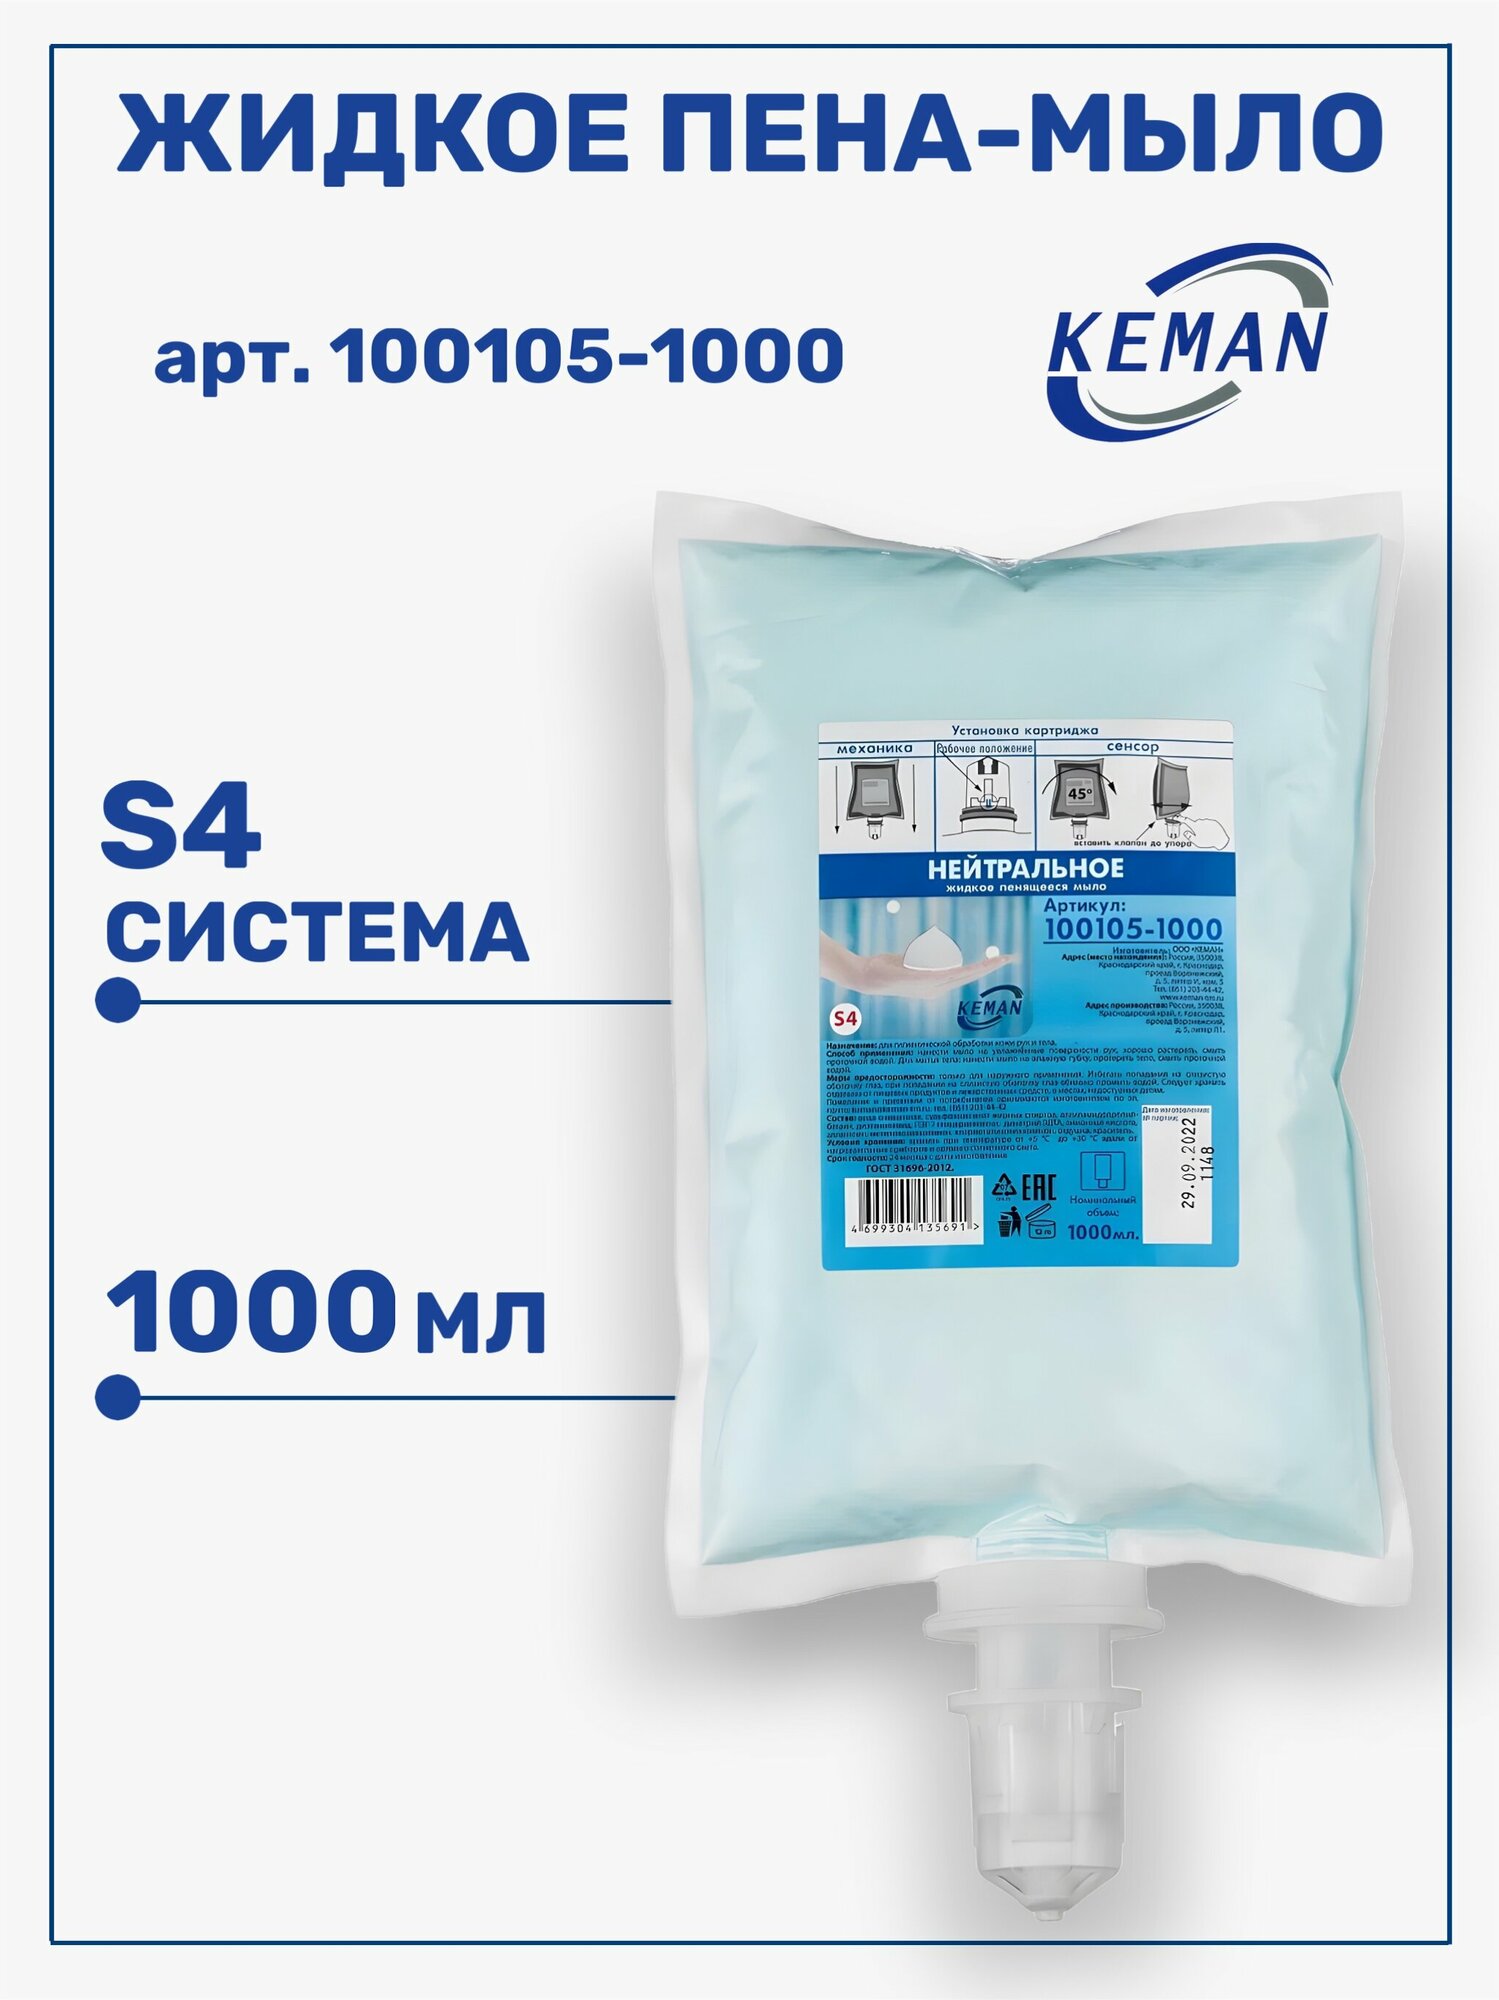 Жидкое мыло-пена Keman картридж для диспенсера S4 нейтральное пенящееся 1л 100105-1000 6 шт